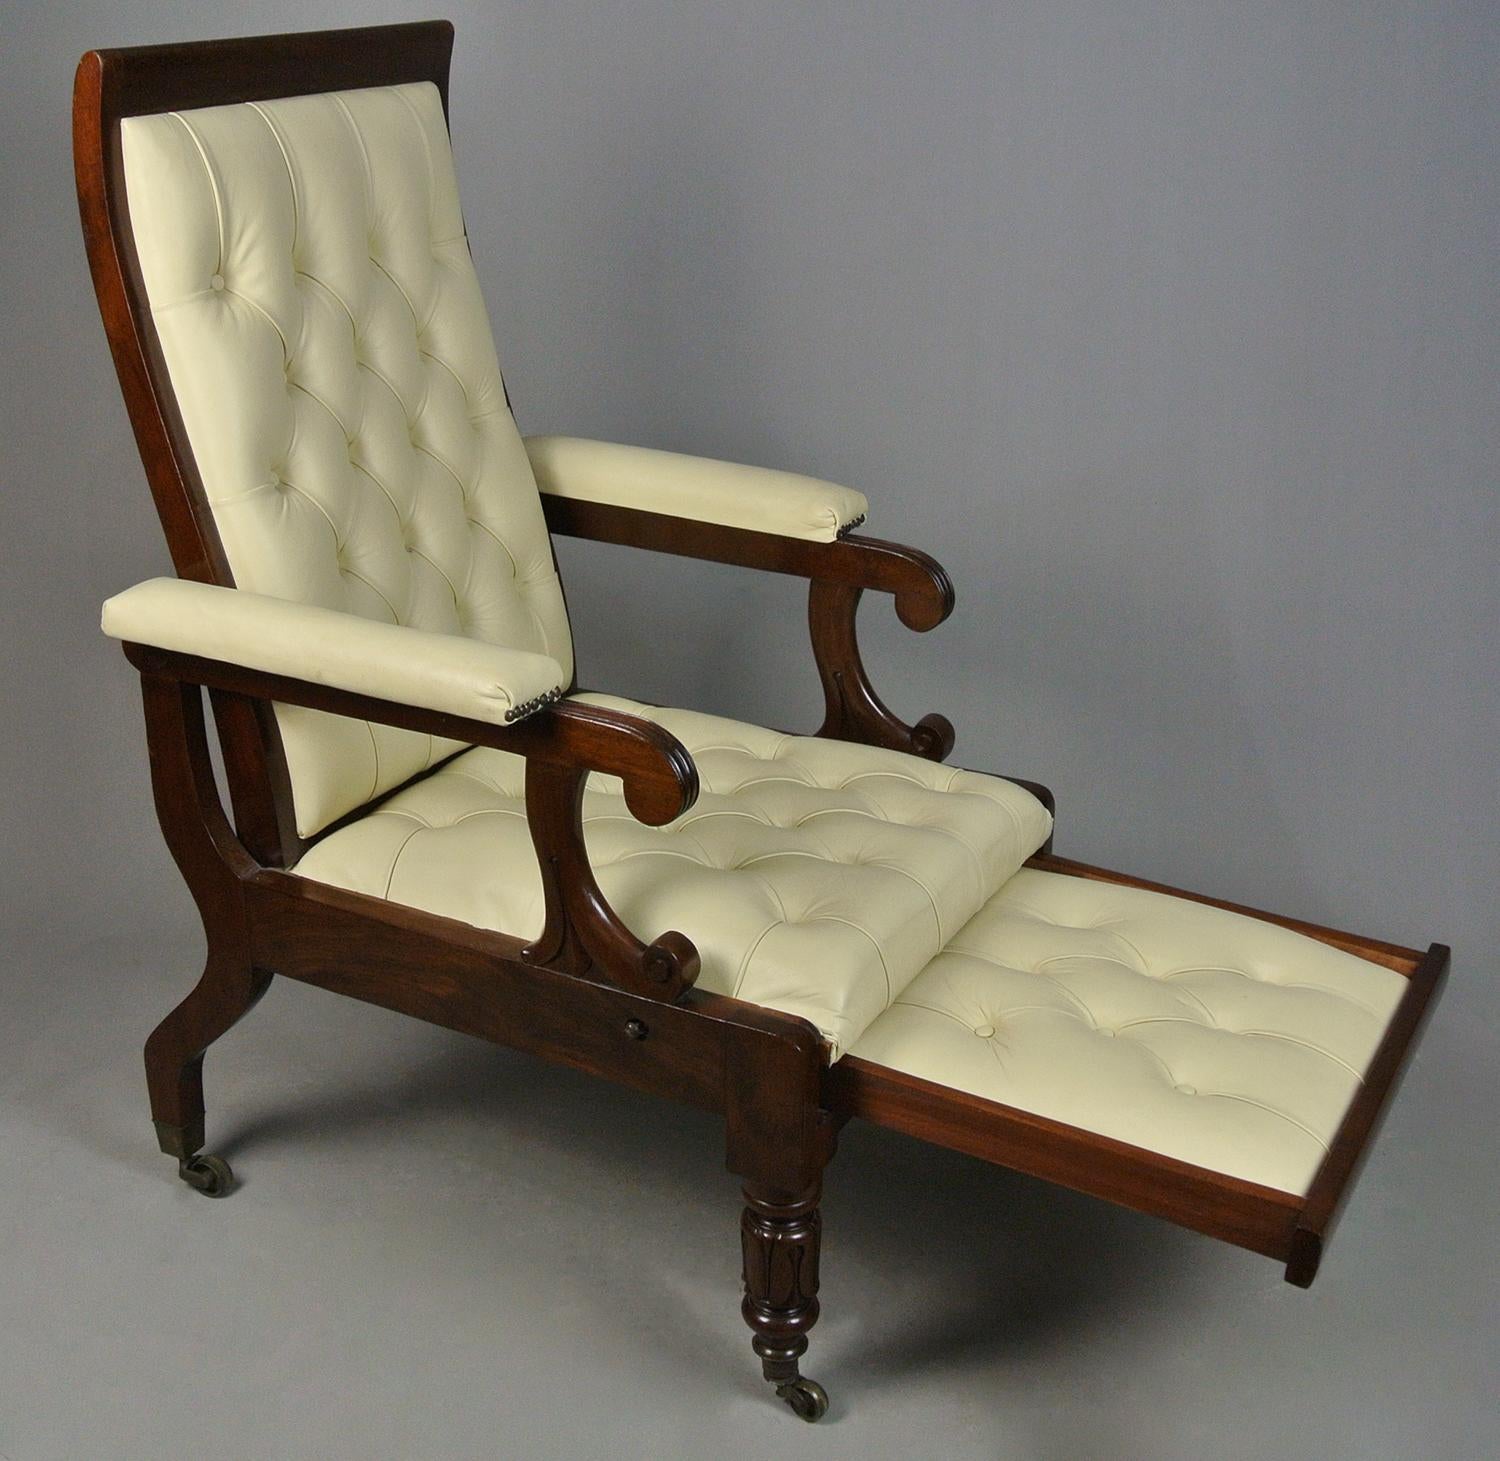 Ce magnifique fauteuil inclinable a été fabriqué par Robert Daws, un fabricant de meubles anglais qui travaillait au 17 Margaret Street, Cavendish Square, à Londres, entre 1820 et 1839.

Il a breveté pour la première fois son 